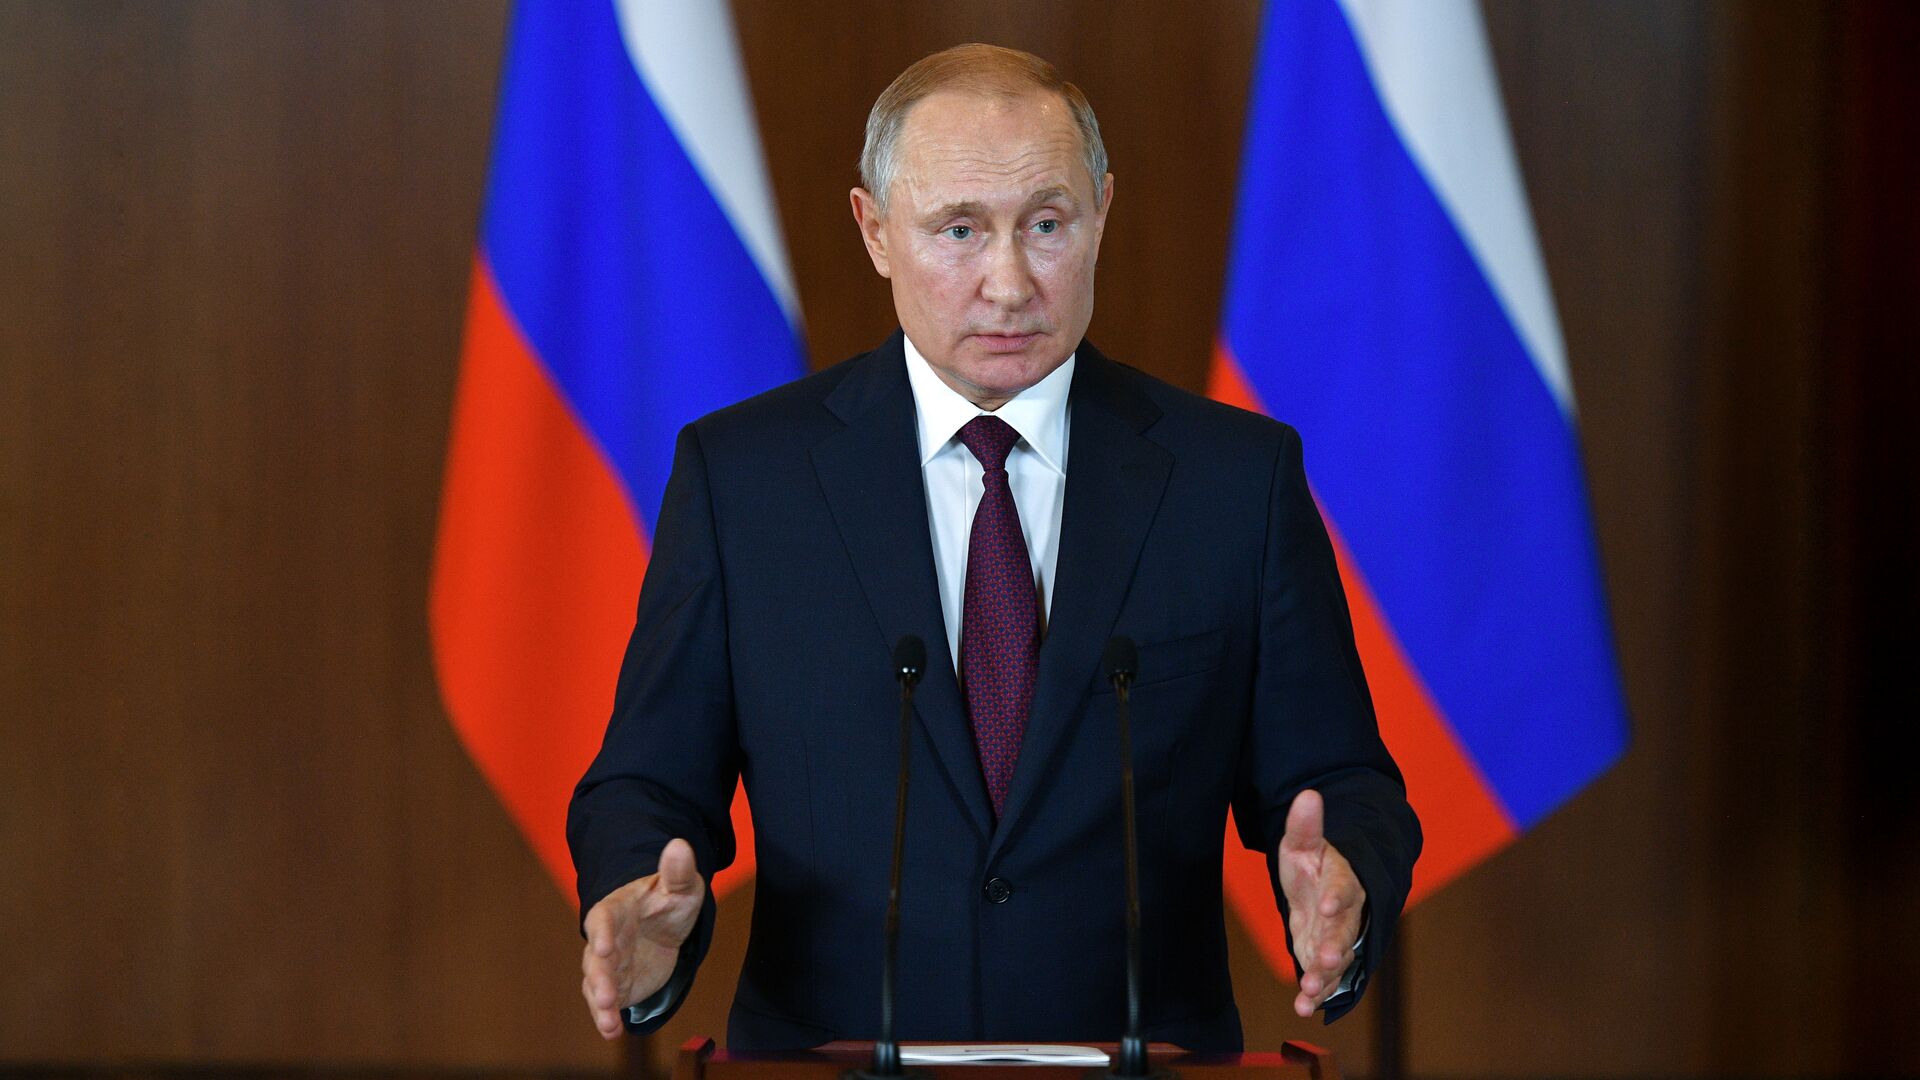 Запад должен уважать решение Крыма воссоединиться с Россией, заявил Путин